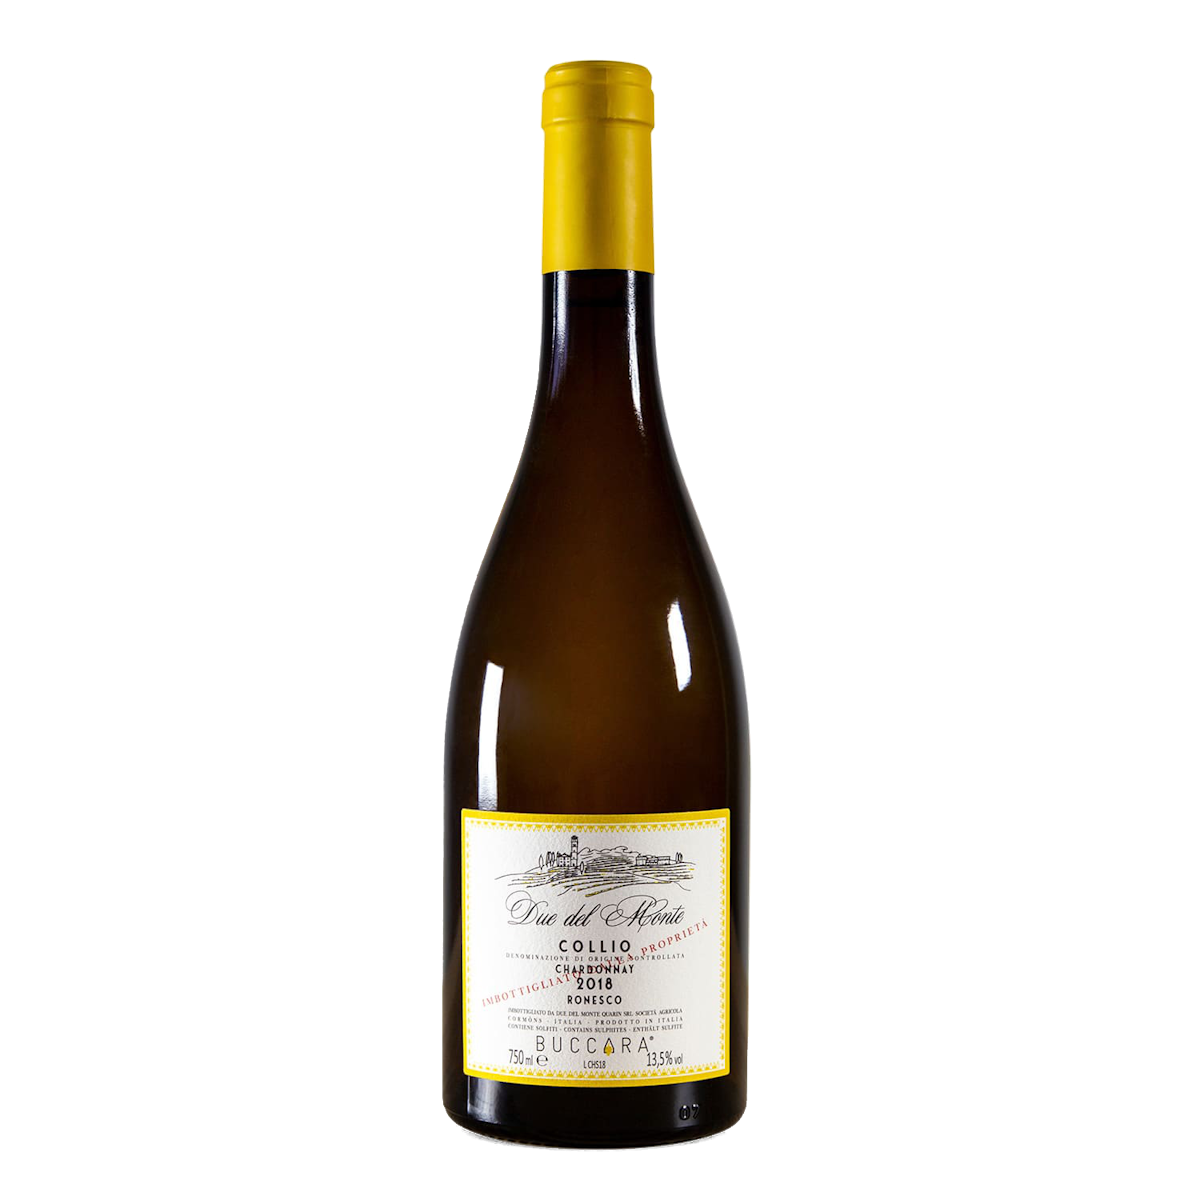 Chardonnay Ronesco DOC Collio, 2018